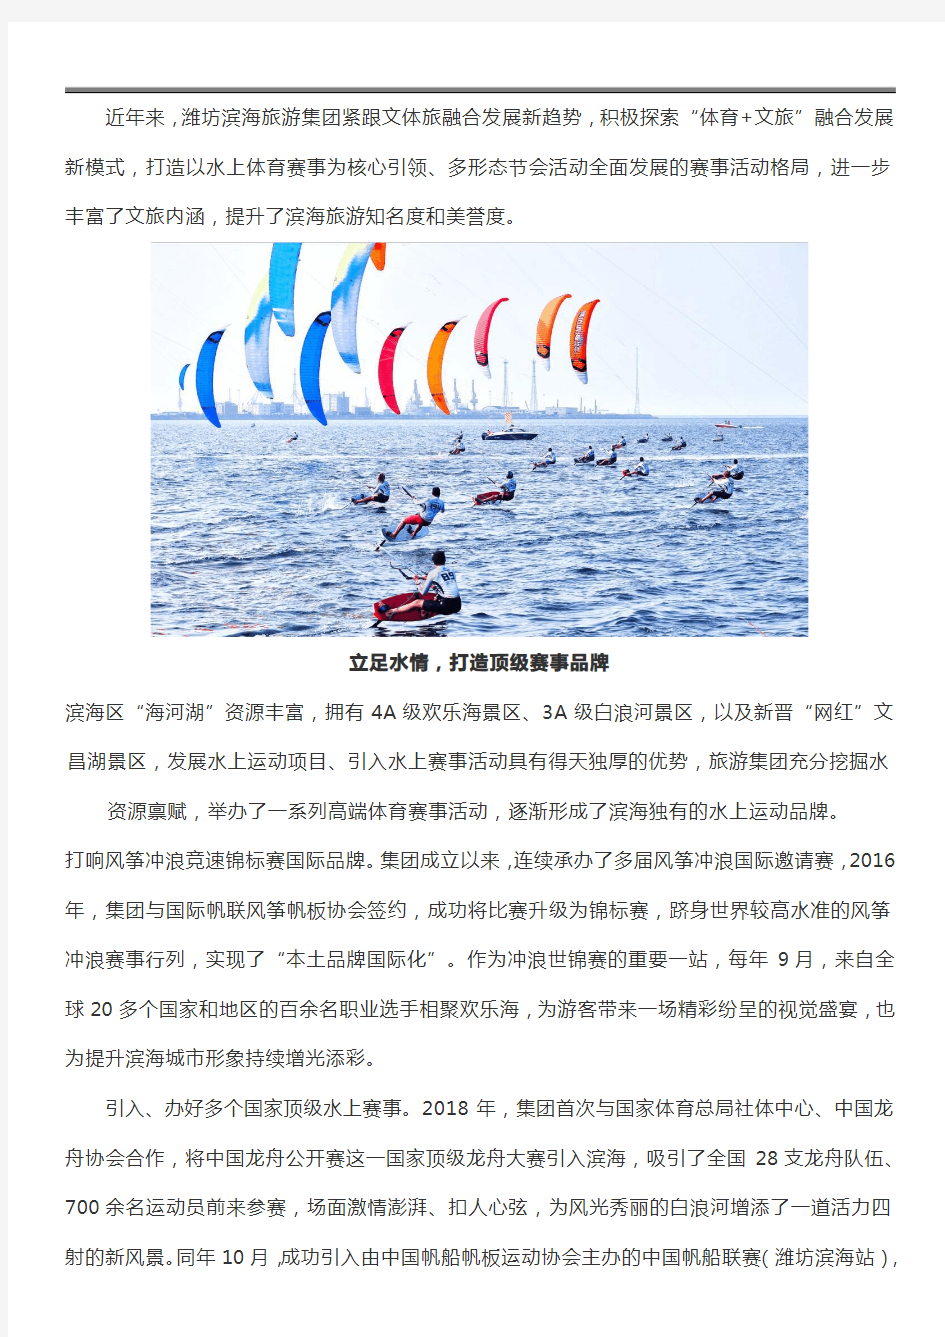 潍坊滨海旅游集团创新文体旅融合发展模式 打造国际化体育赛事品牌